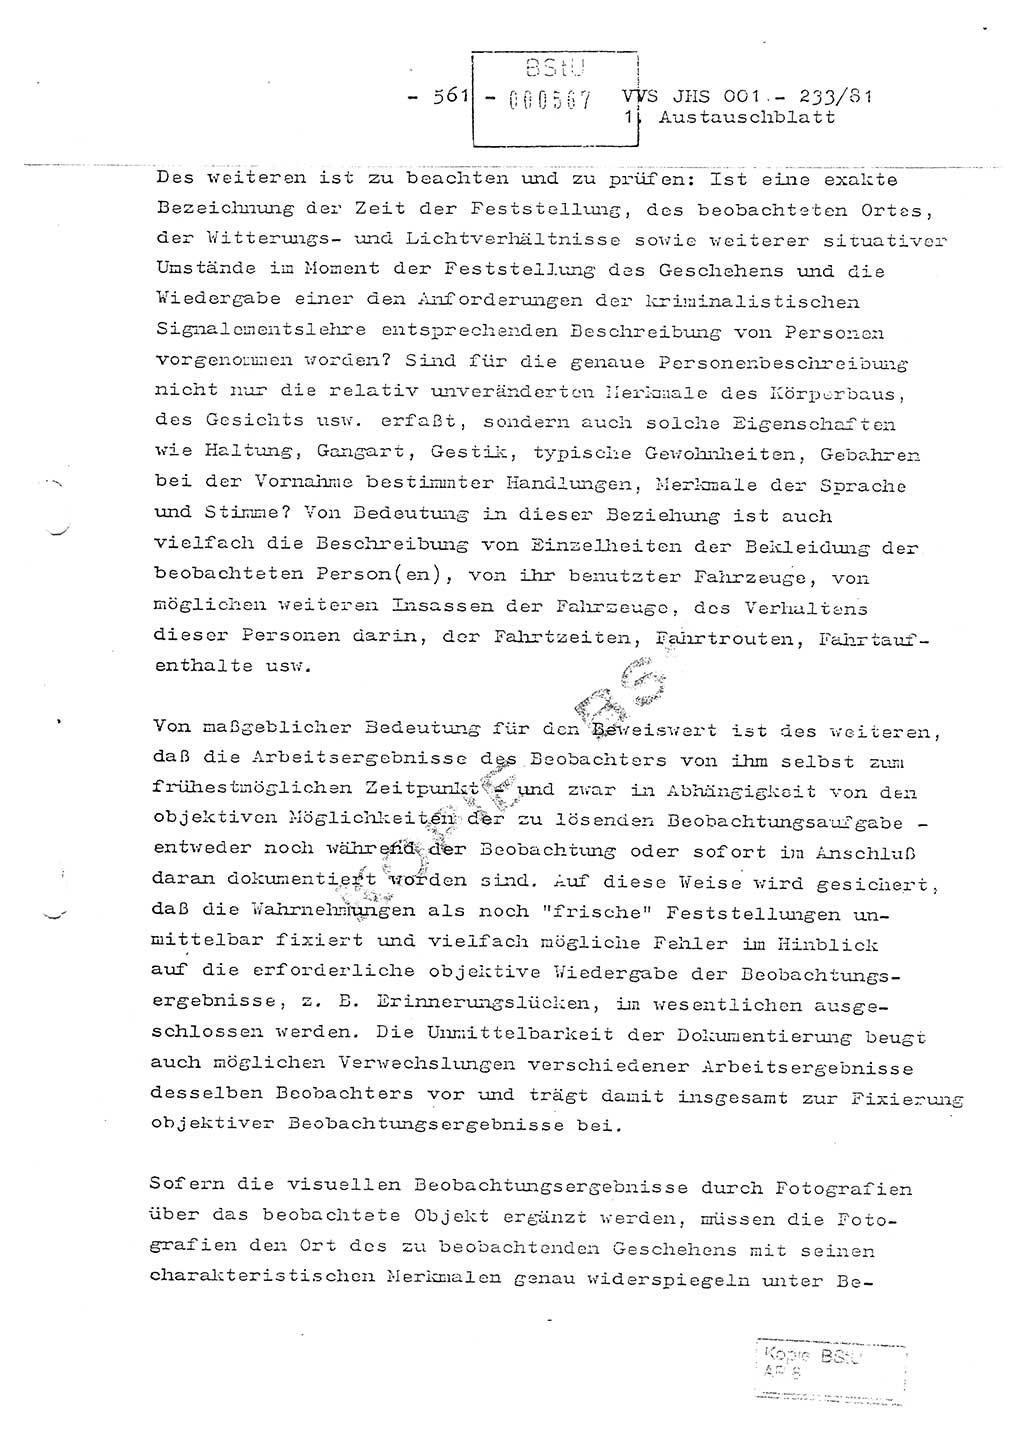 Dissertation Oberstleutnant Horst Zank (JHS), Oberstleutnant Dr. Karl-Heinz Knoblauch (JHS), Oberstleutnant Gustav-Adolf Kowalewski (HA Ⅸ), Oberstleutnant Wolfgang Plötner (HA Ⅸ), Ministerium für Staatssicherheit (MfS) [Deutsche Demokratische Republik (DDR)], Juristische Hochschule (JHS), Vertrauliche Verschlußsache (VVS) o001-233/81, Potsdam 1981, Blatt 561 (Diss. MfS DDR JHS VVS o001-233/81 1981, Bl. 561)